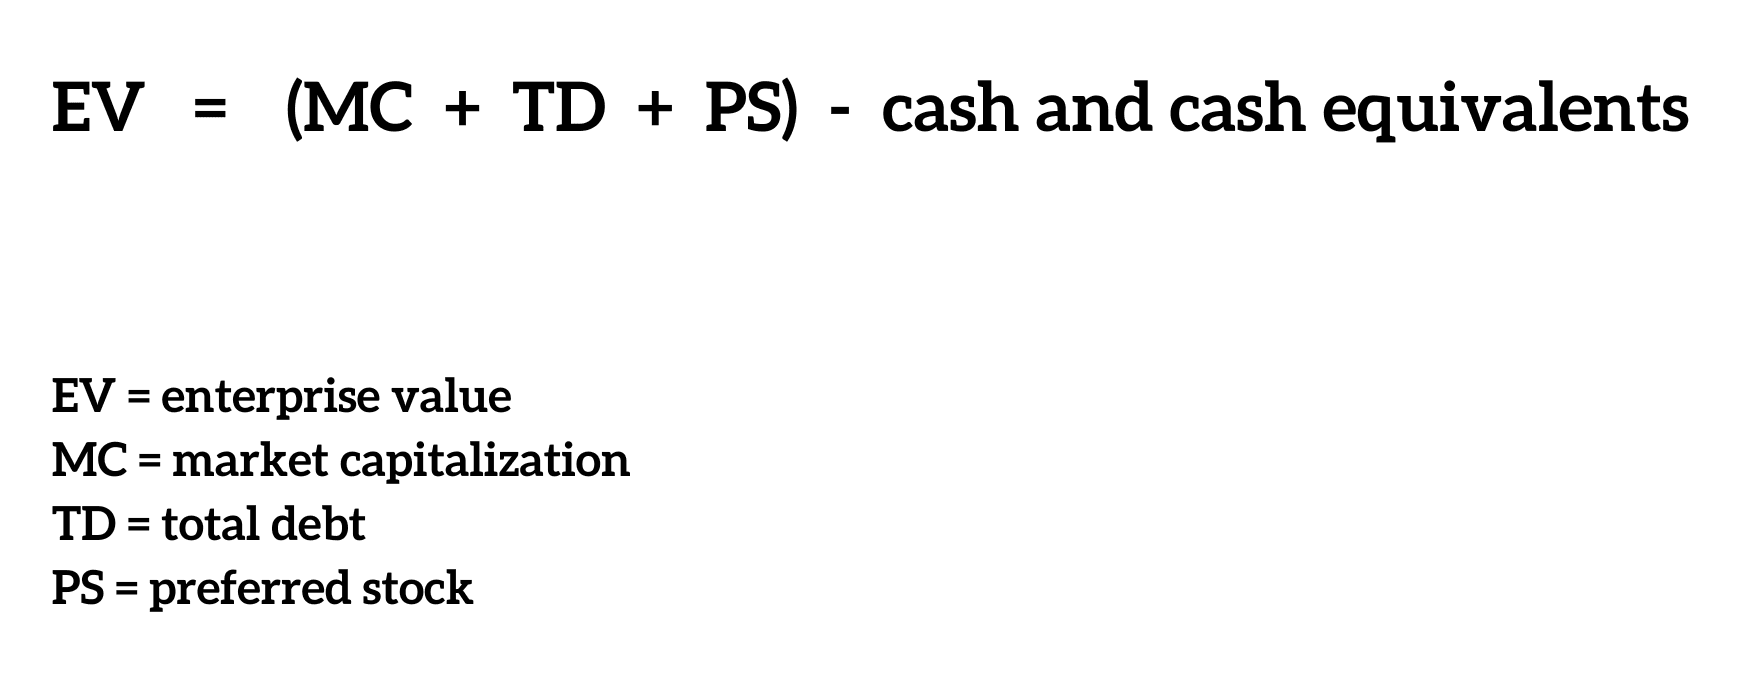 Base calculation for EV